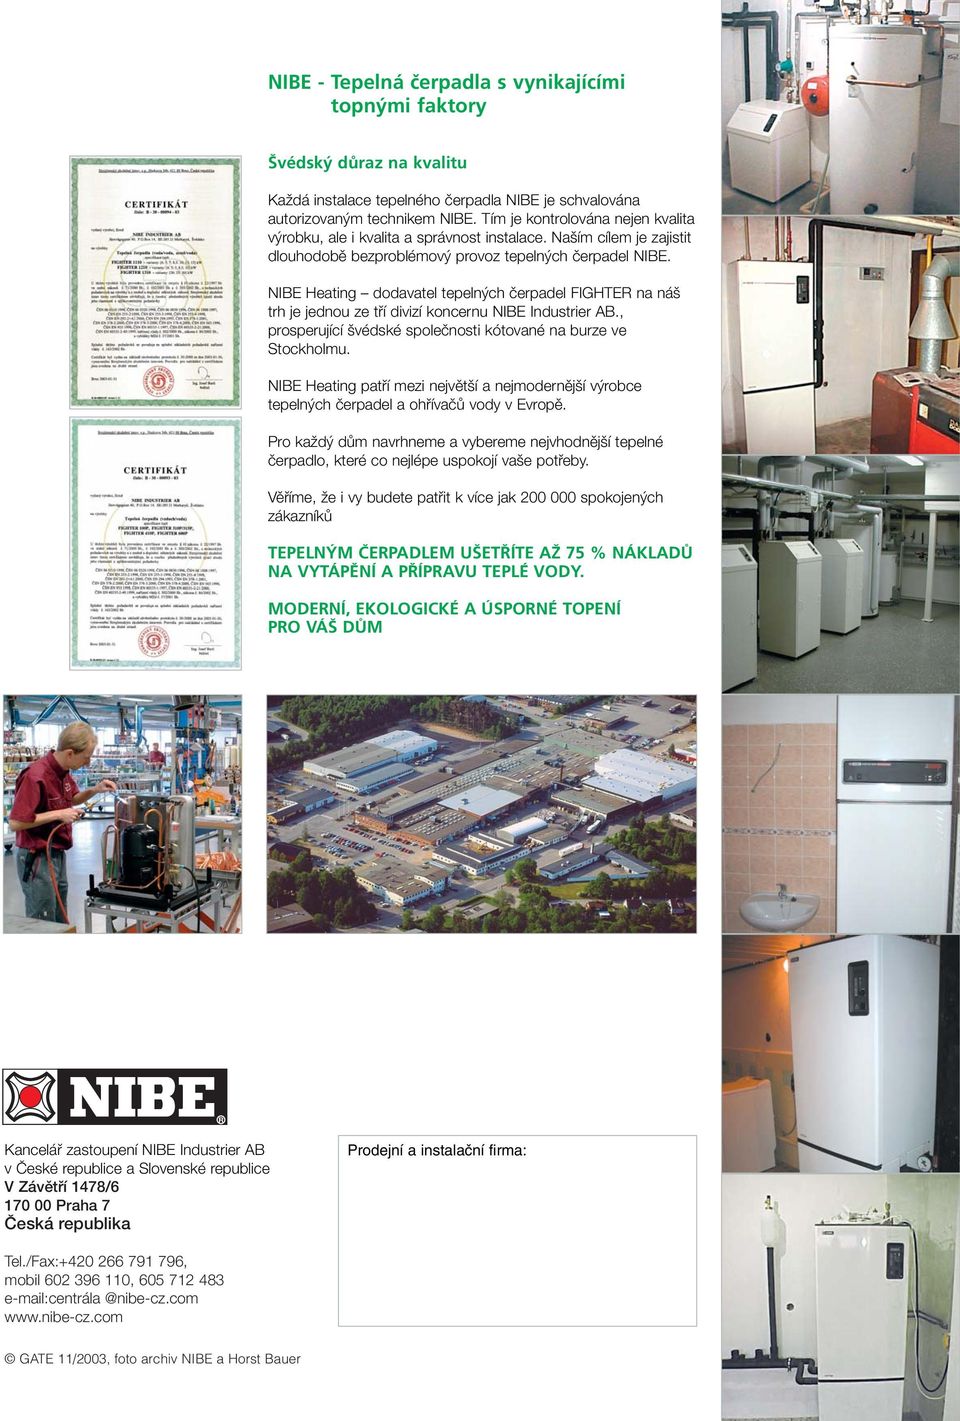 NIBE Heating dodavatel tepeln ch ãerpadel FIGHTER na ná trh je jednou ze tfií divizí koncernu NIBE Industrier AB., prosperující védské spoleãnosti kótované na burze ve Stockholmu.